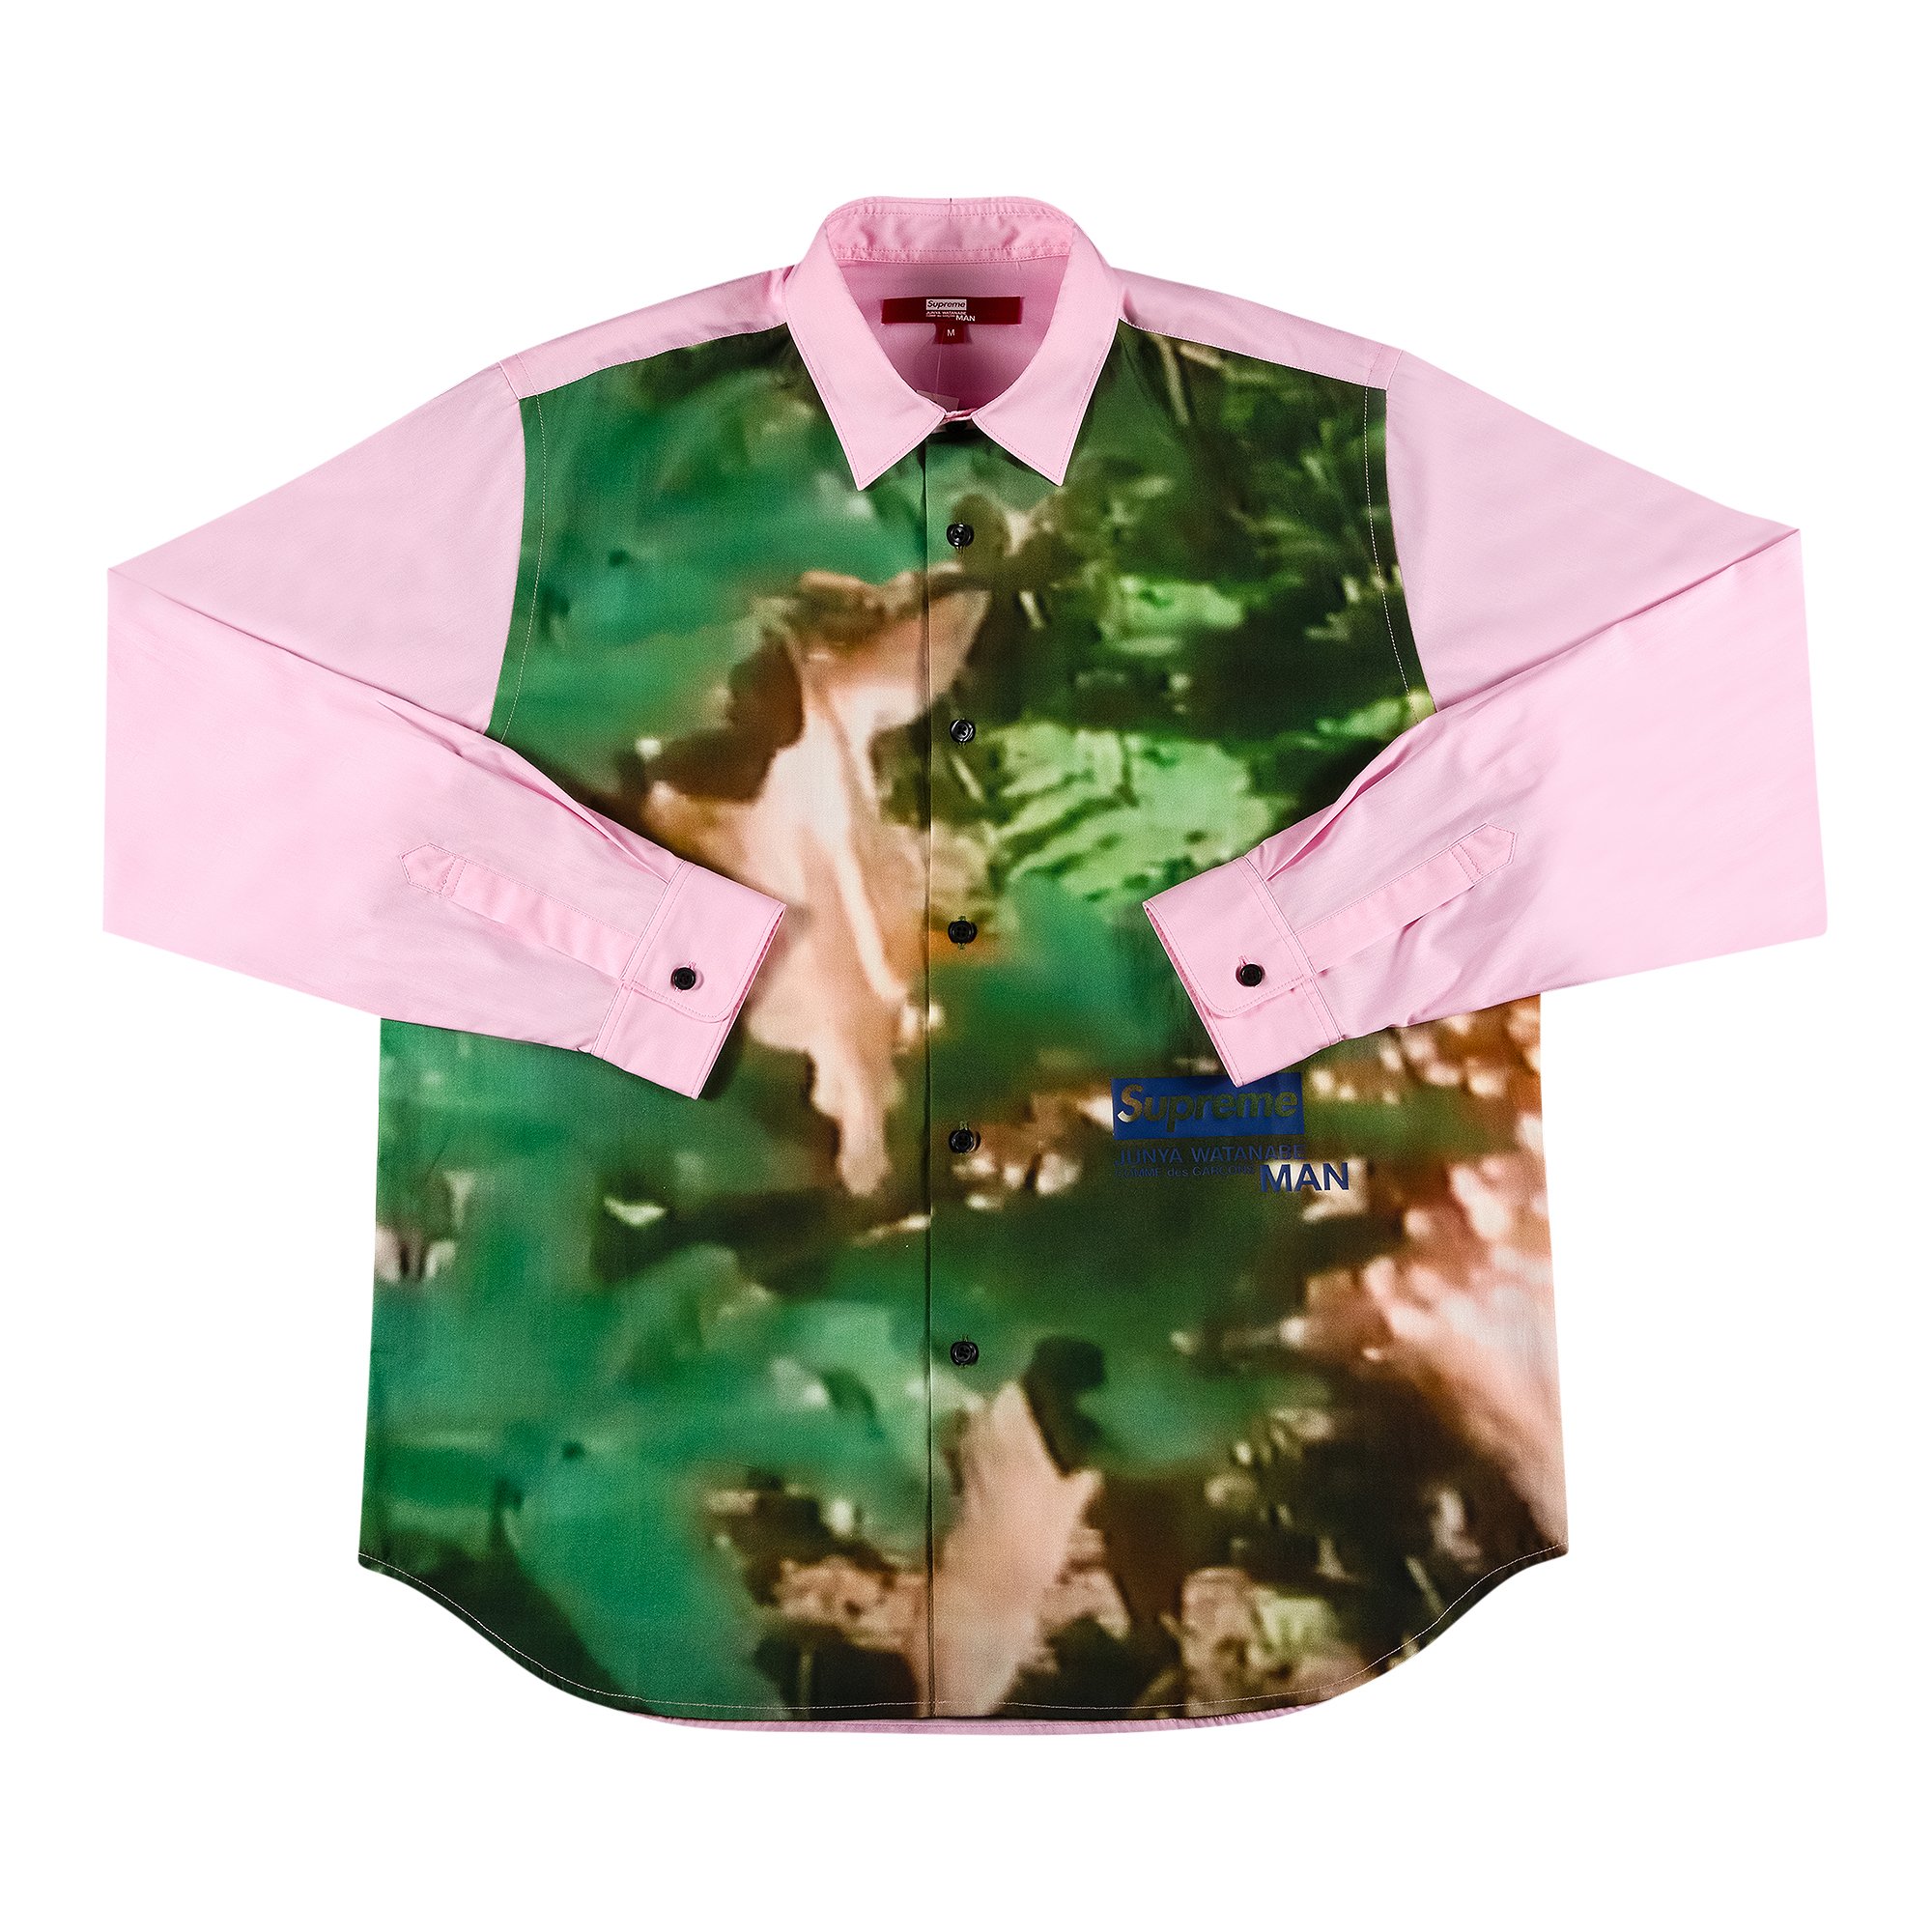 Supreme x Junya Watanabe x Comme des Garçons MAN Nature Shirt 'Pink'